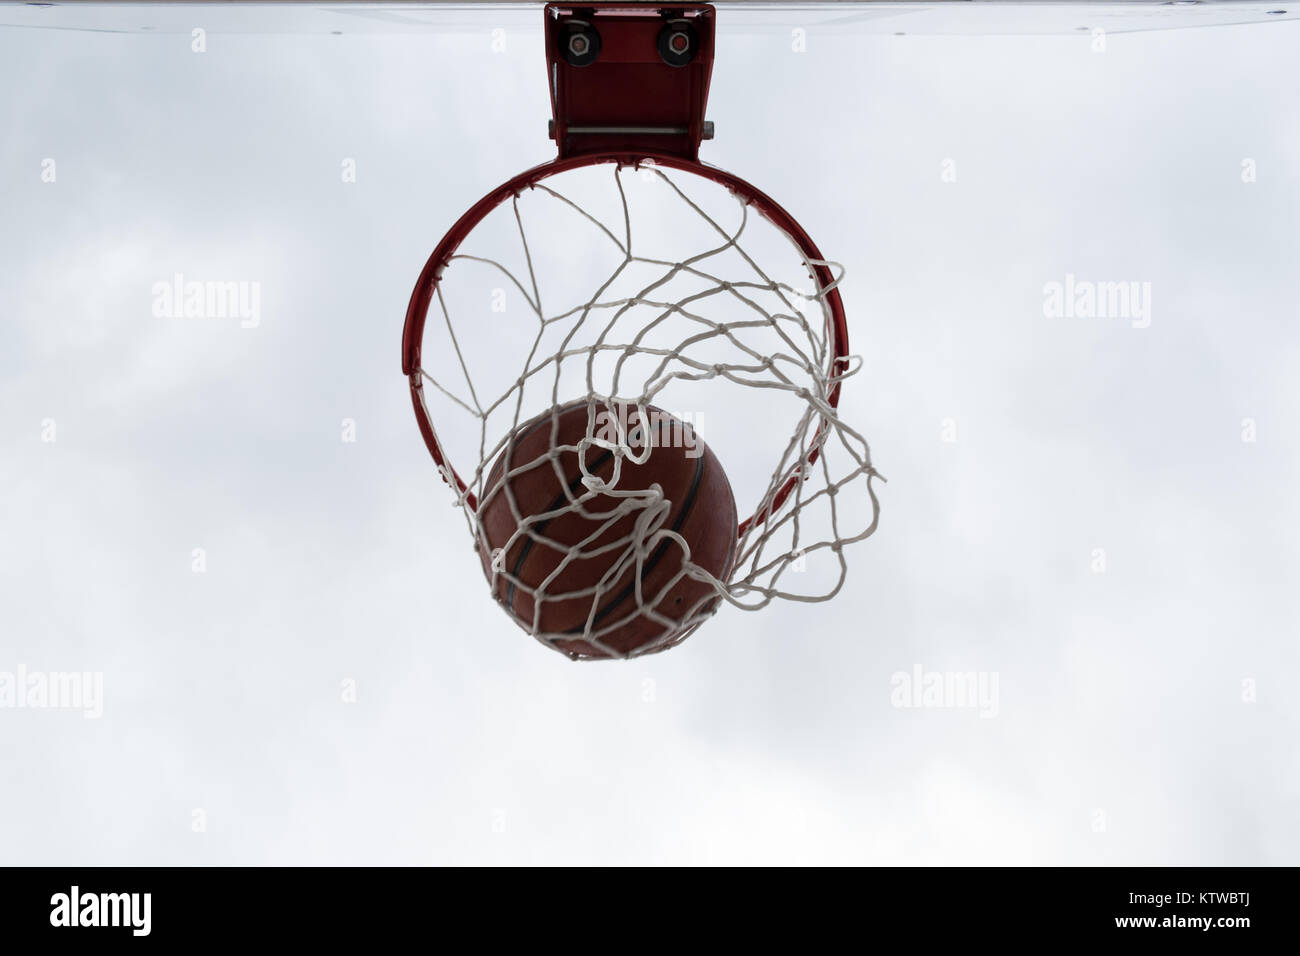 En el interior de bola roja canasta de baloncesto, contra el cielo